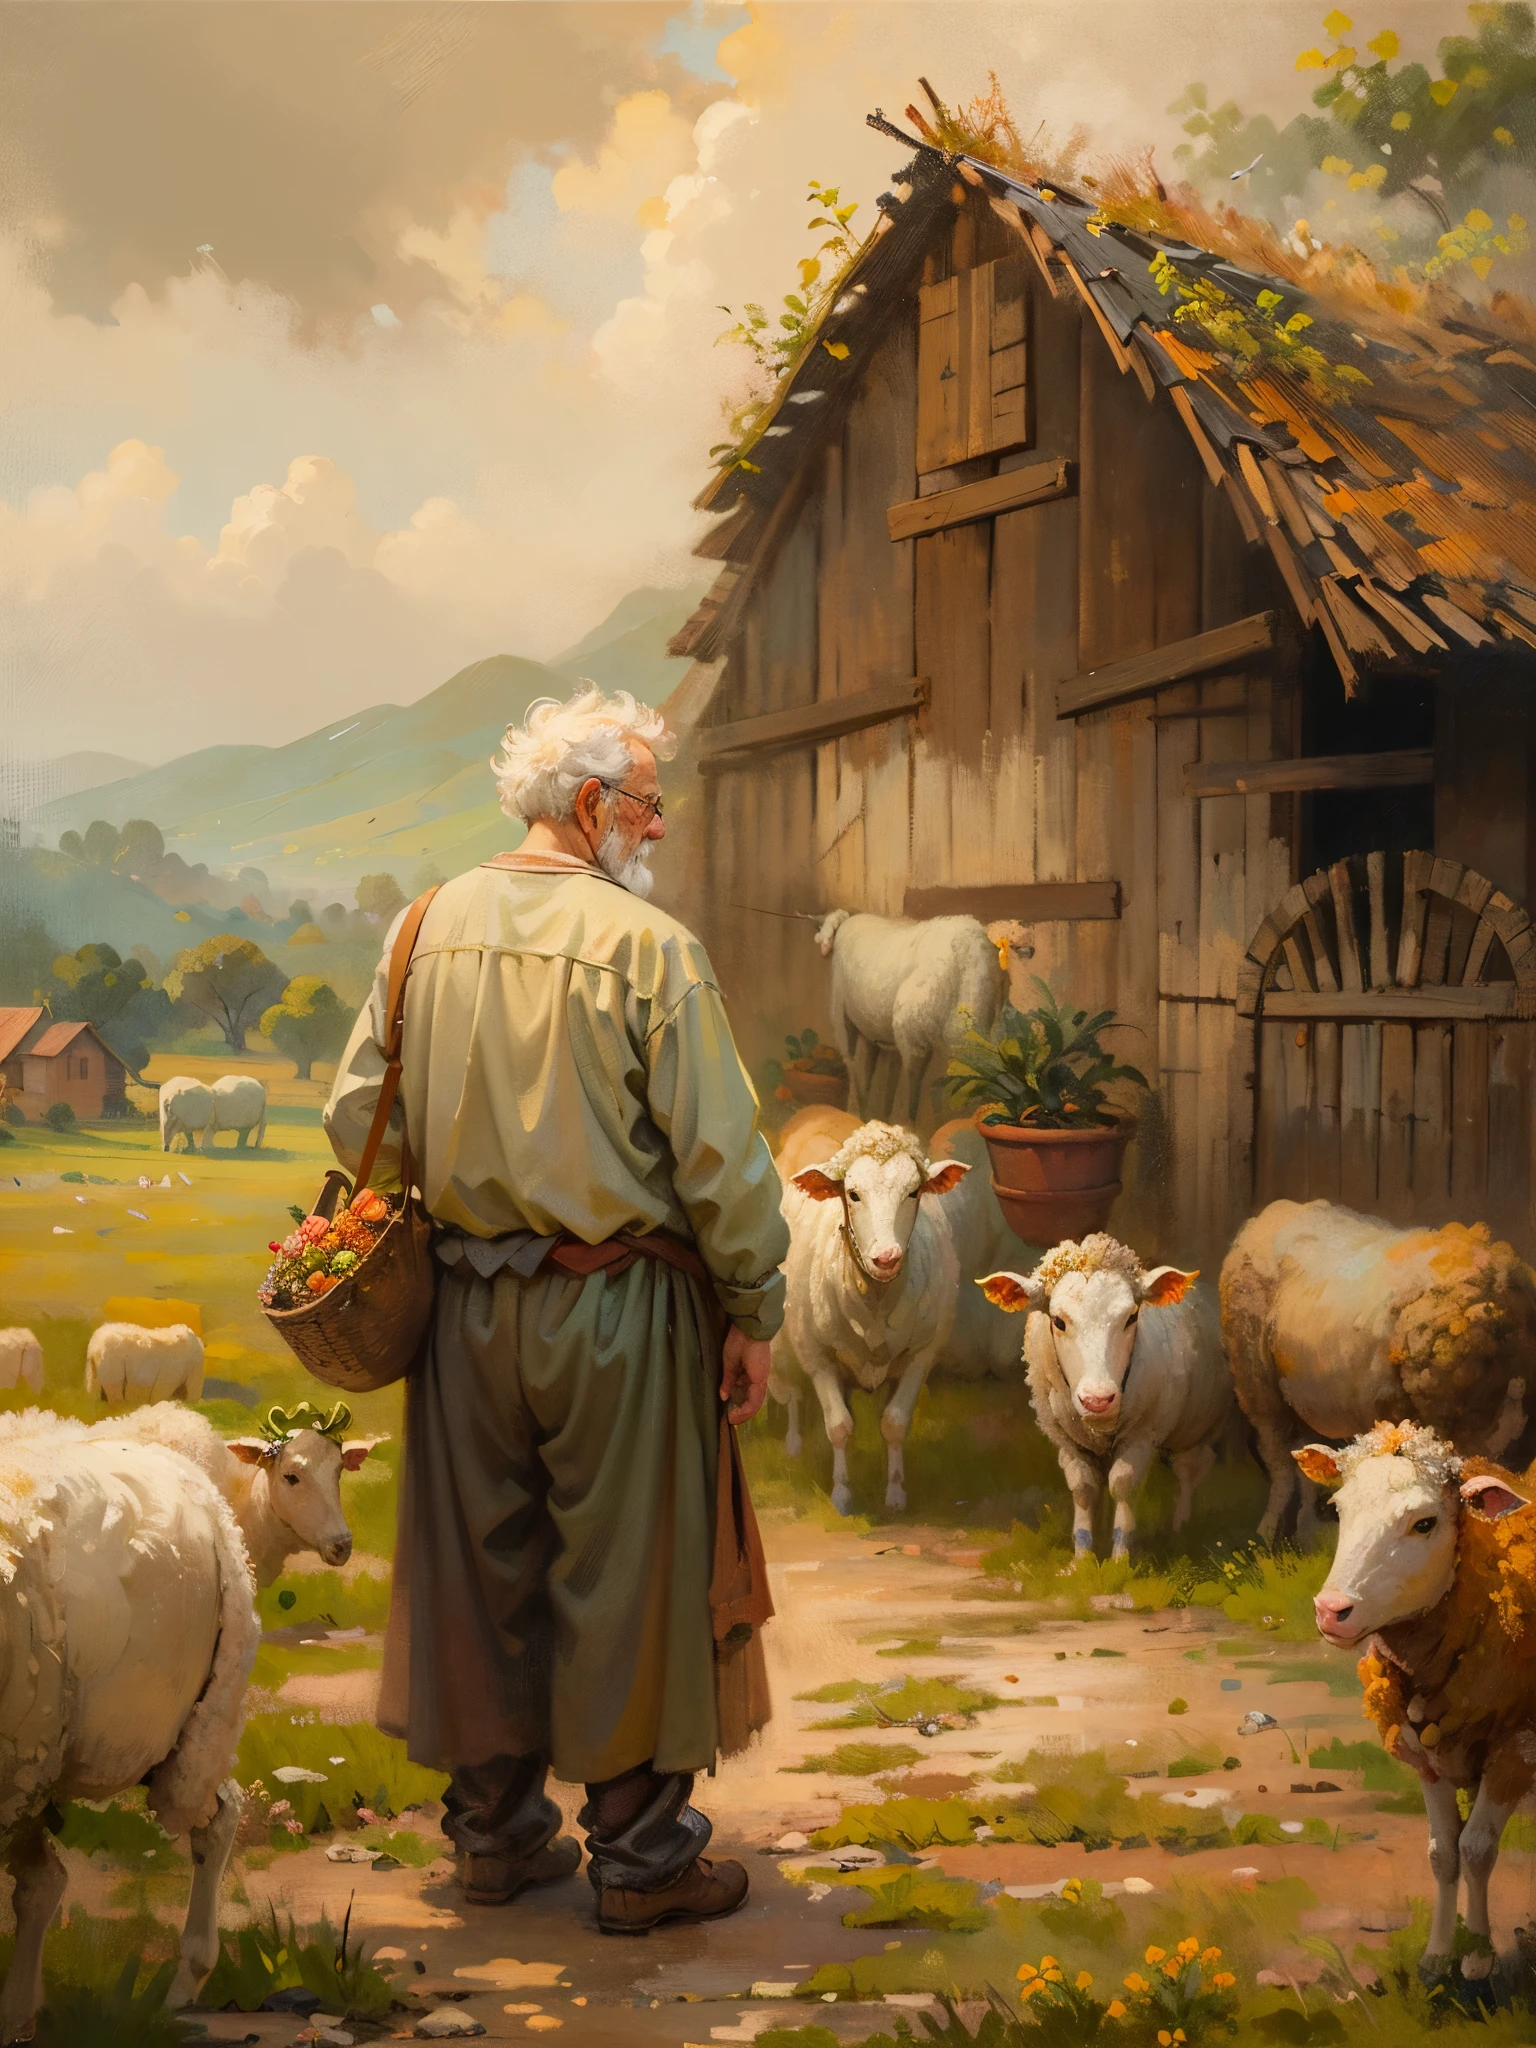 유화，다빈치 예술 스타일。농장의 노인, 부스스한 머리，멀리 보이는 소와 양，Guviz 스타일의 작품,，예술적 창의성:1.37,달콤한，훌륭하고 마법같은，절묘한，자연스럽고 부드러운 빛，좋은 인생